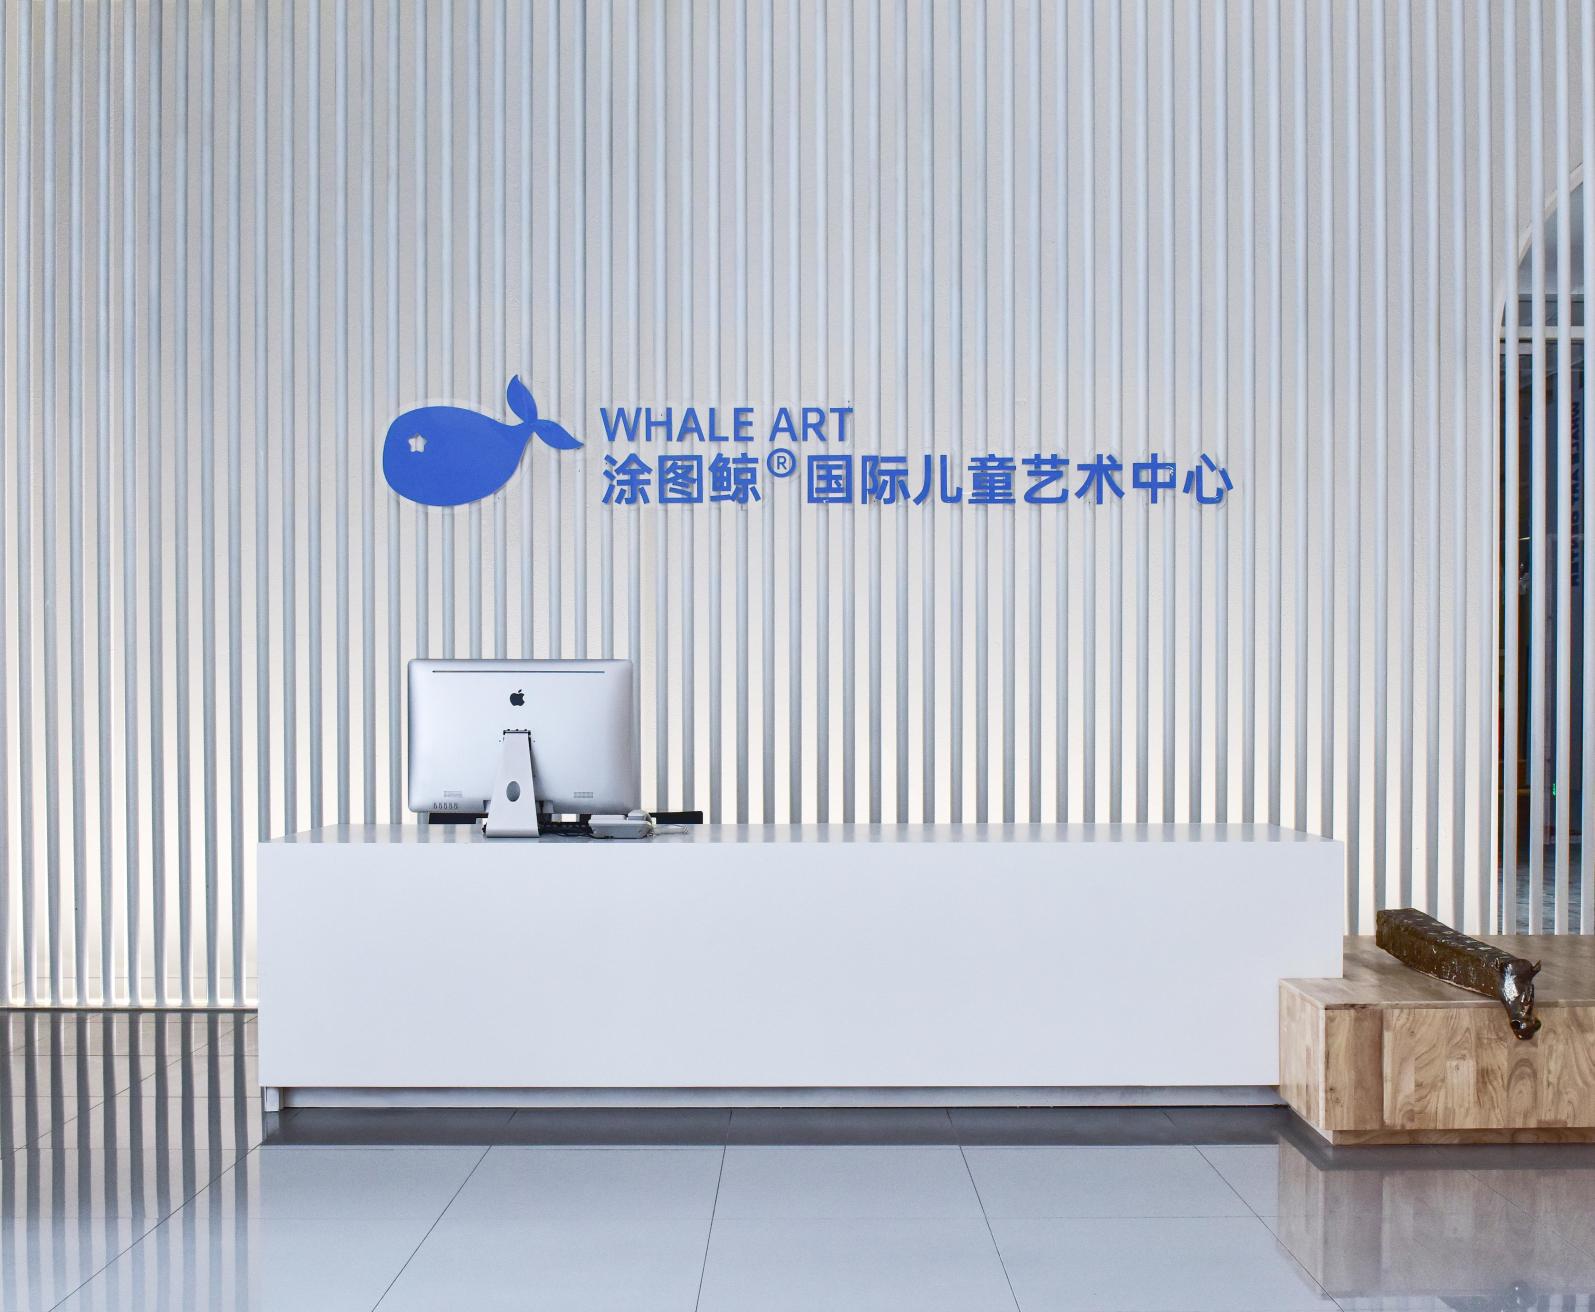 涂图鲸国际儿童艺术中心